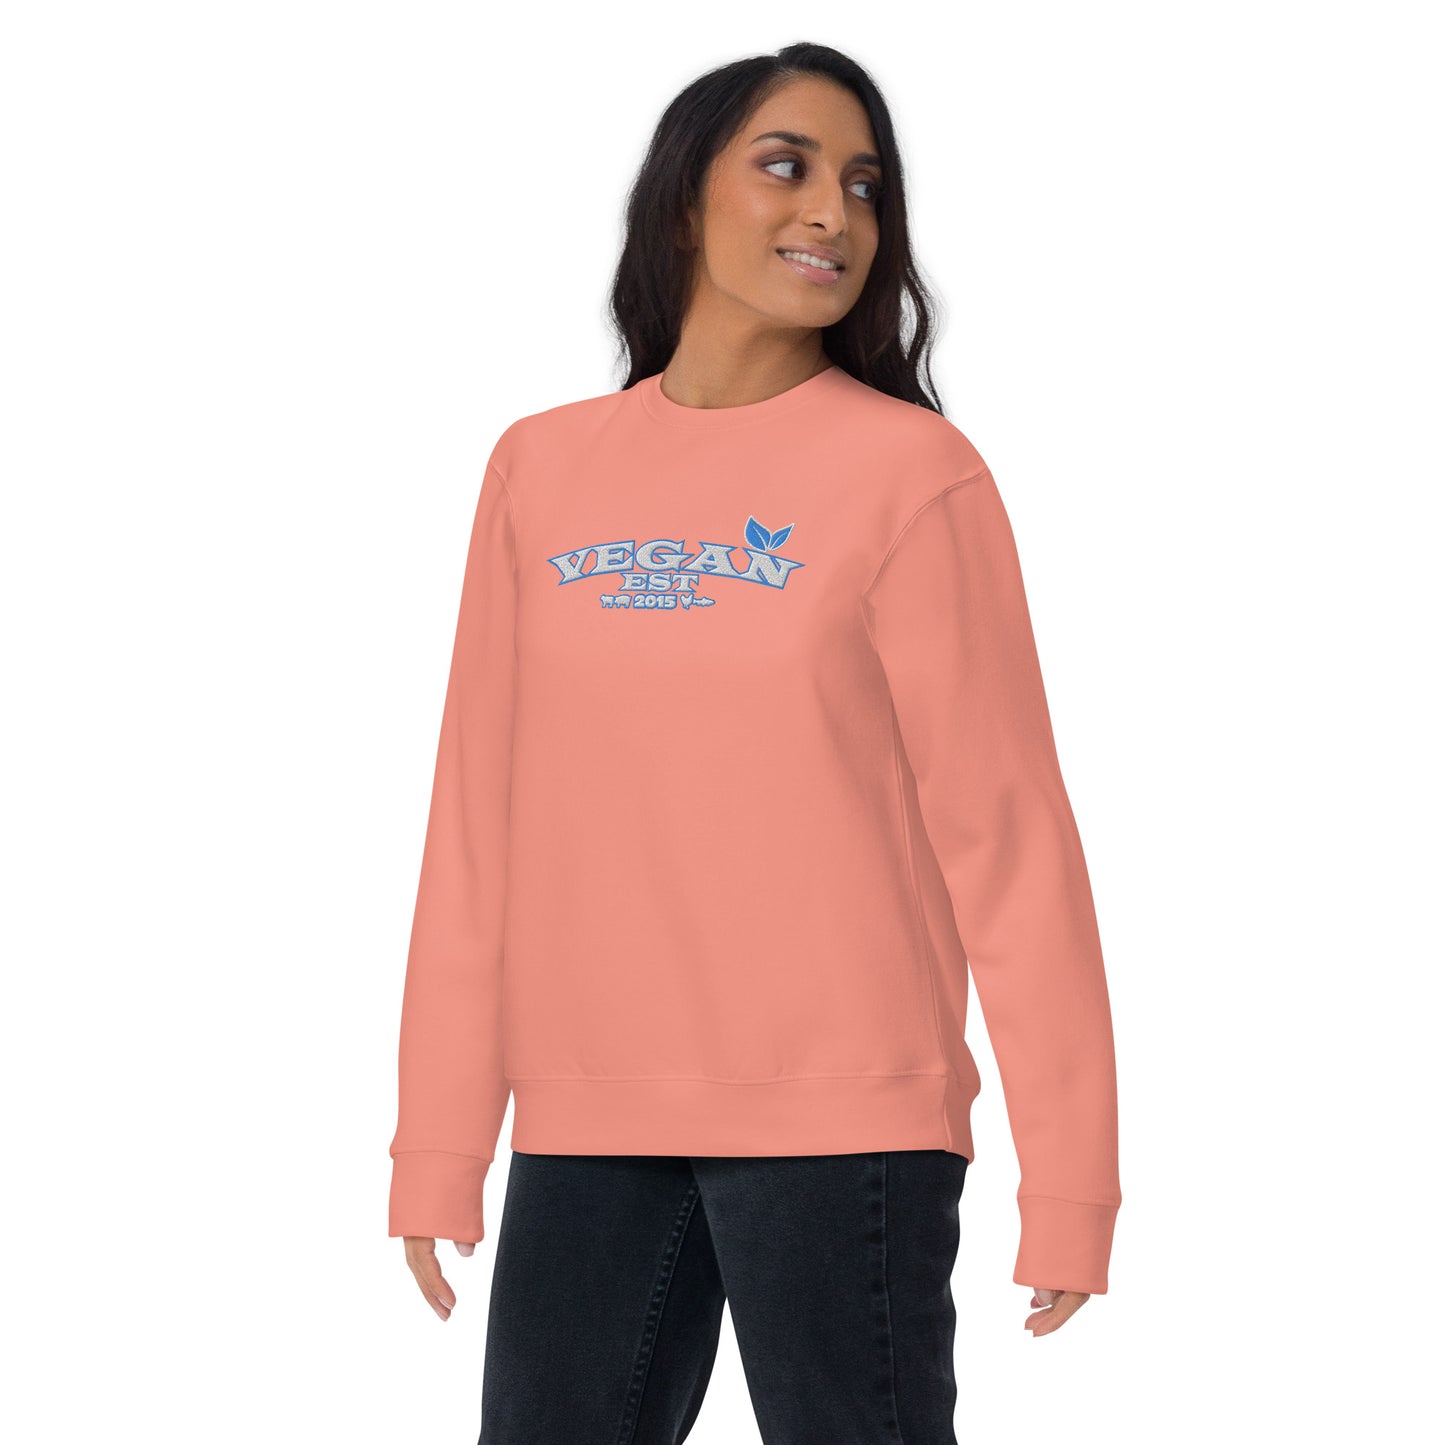 VEGAN "EST****" CUSTOMIZABLE Unisex Premium Embroidered Sweatshirt